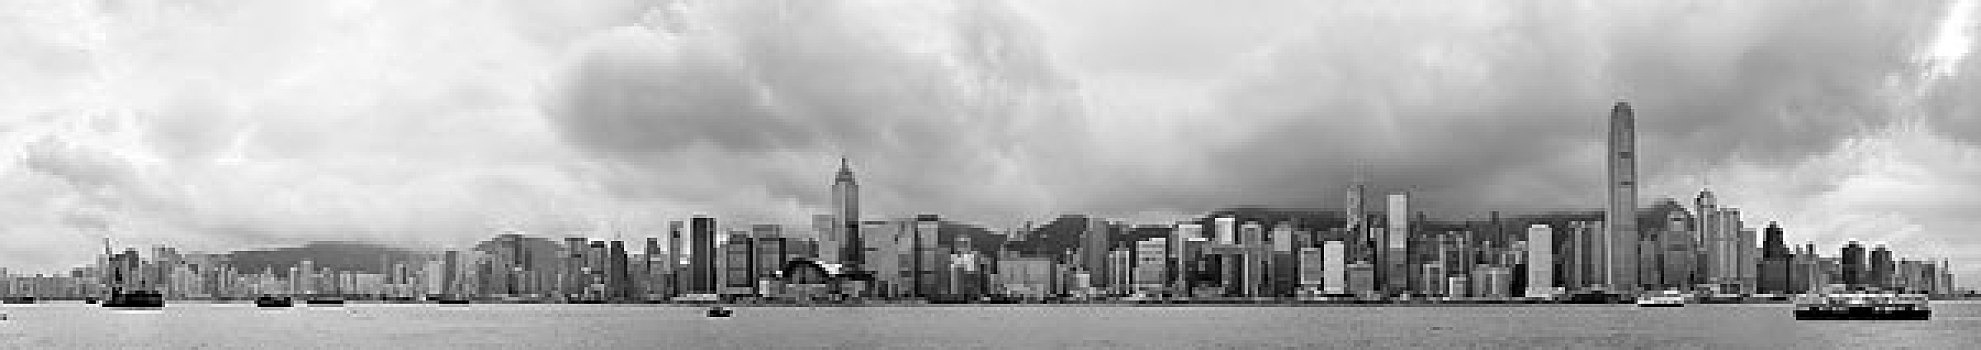 香港,黑白